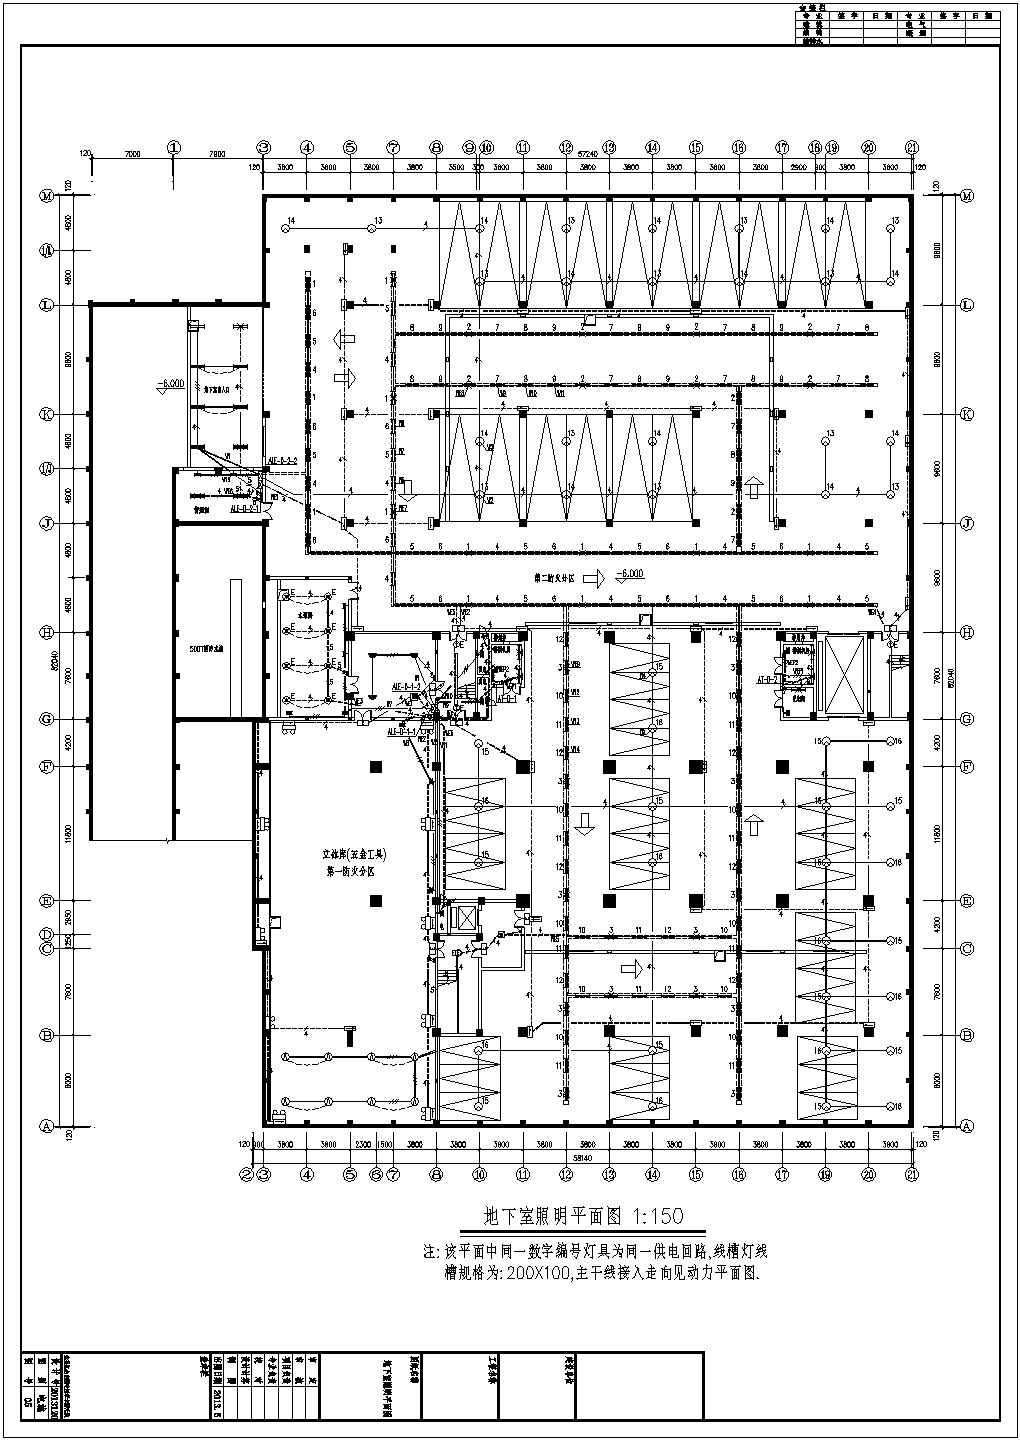 15119.90㎡五层电力仓储中心全套电气施工图纸